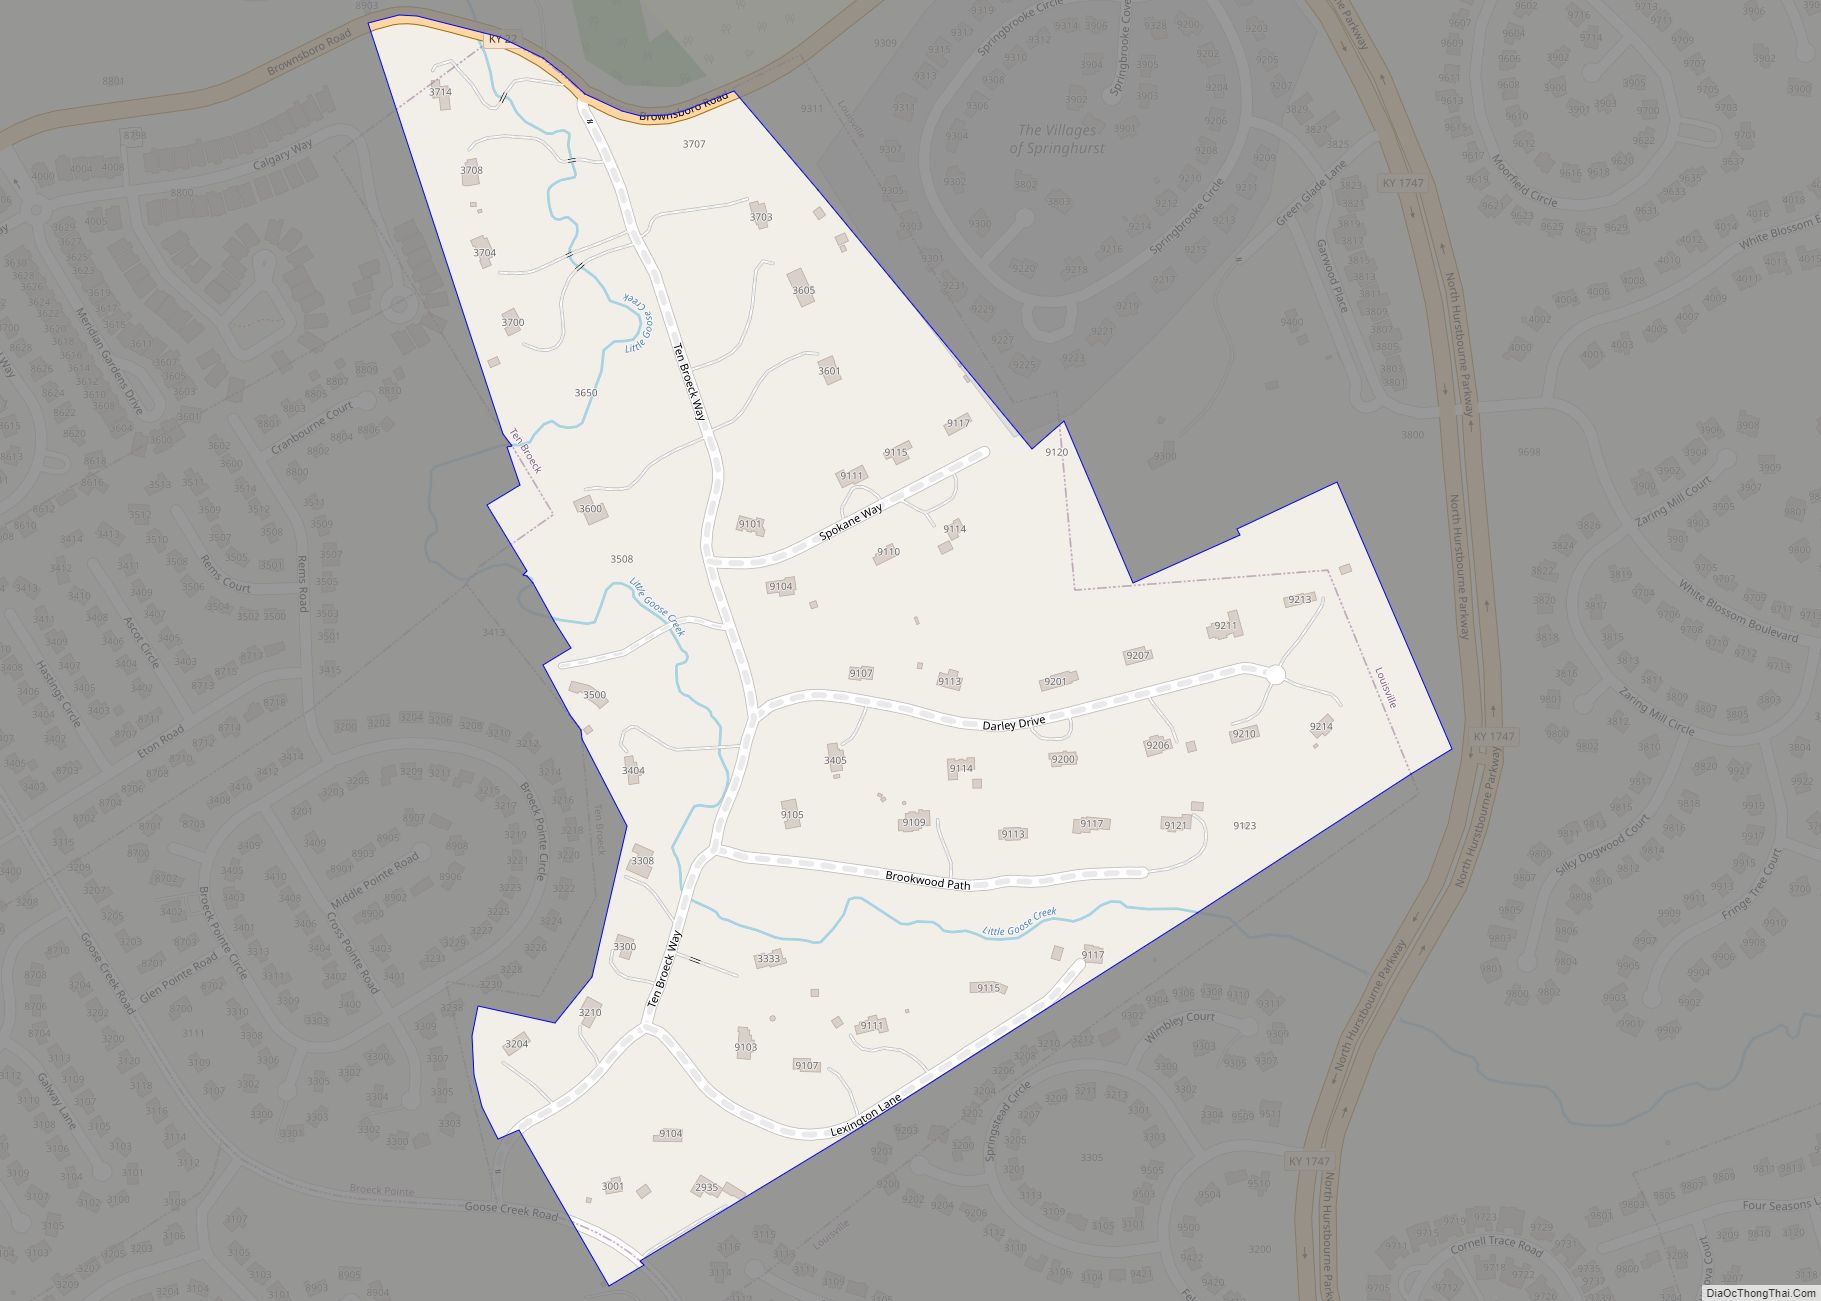 Map of Ten Broeck city